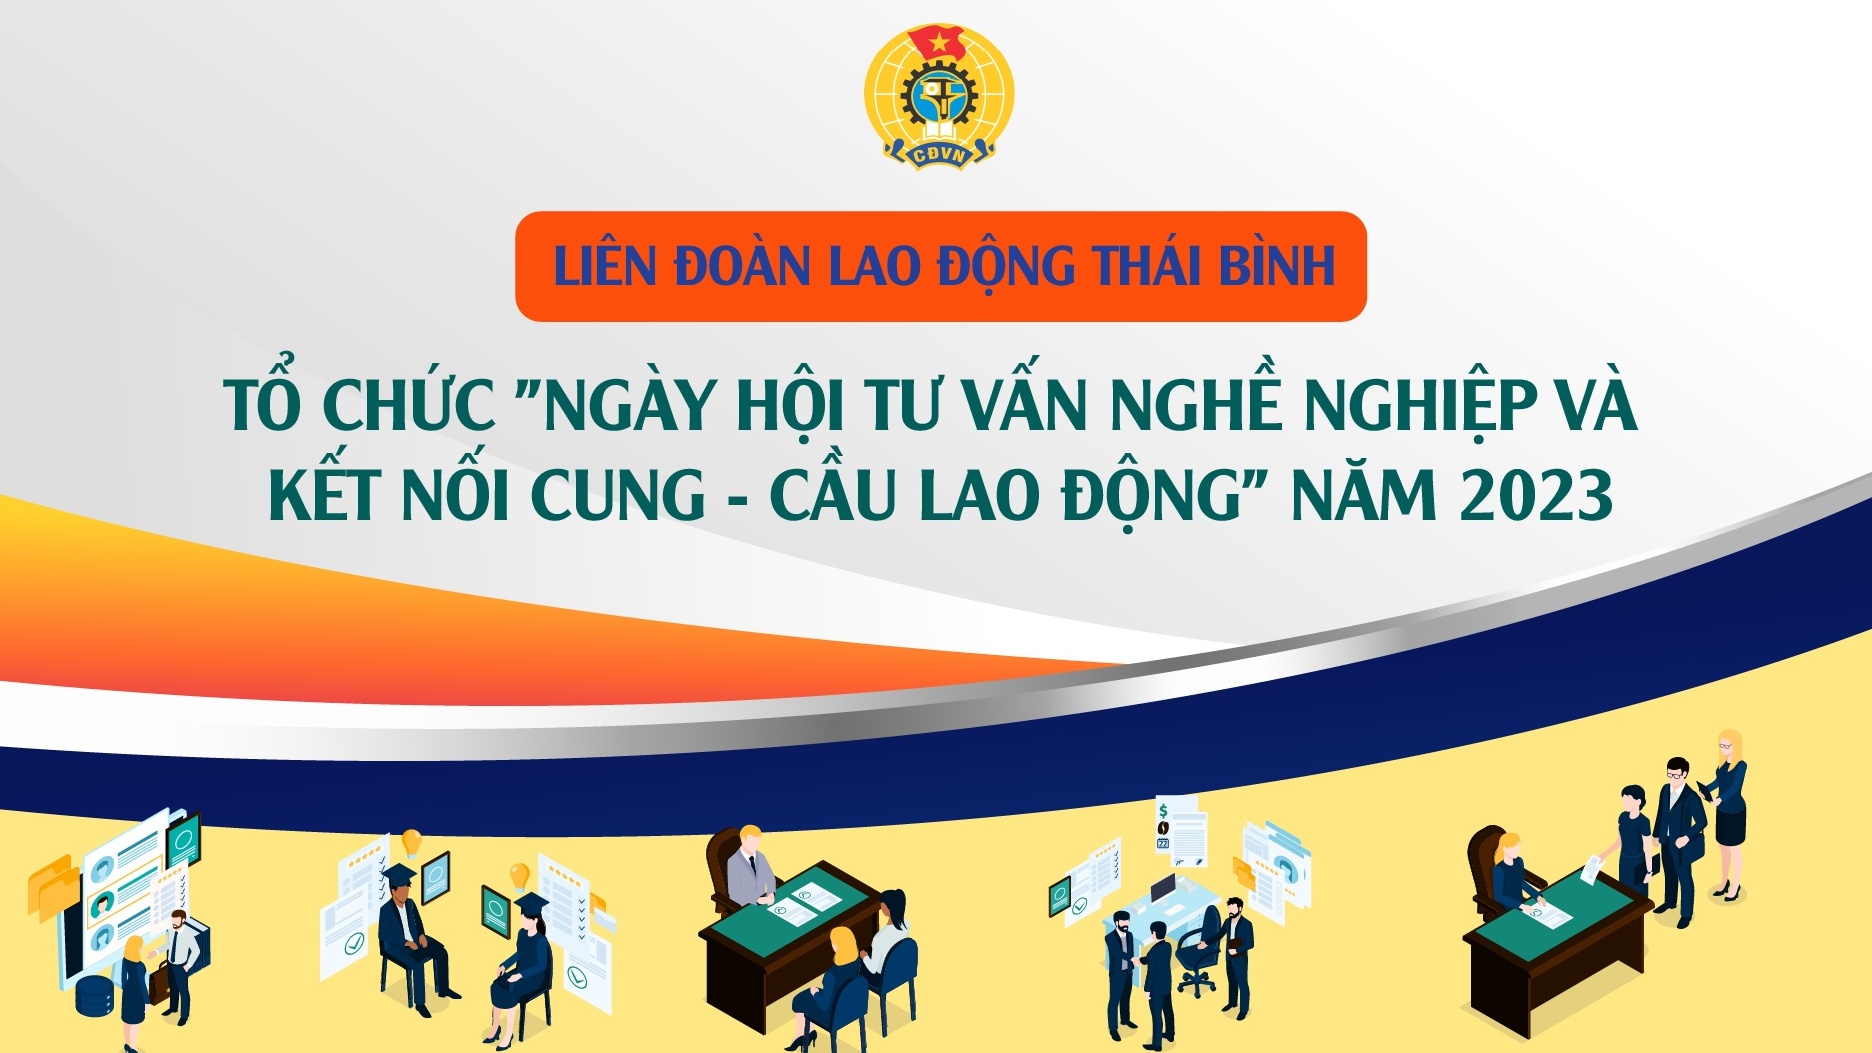 Thái Bình: "Ngày hội tư vấn nghề nghiệp và kết nối cung - cầu lao động" năm 2023